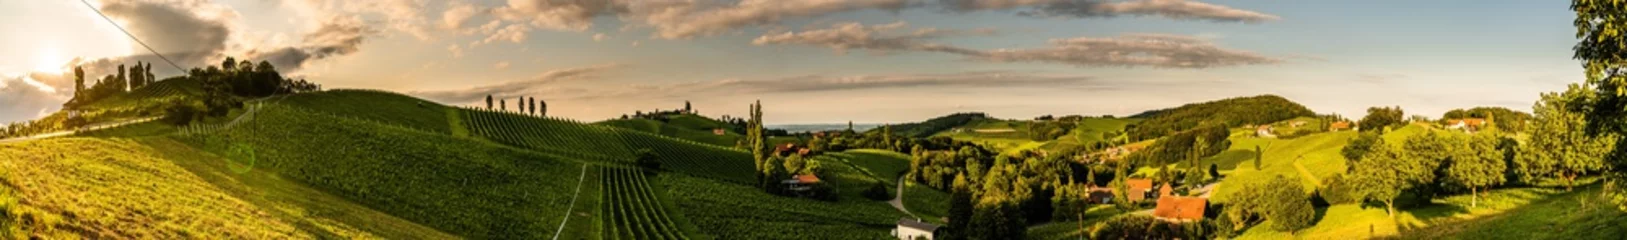 Fotobehang Panoramamening van wijngaarden in de zomer in Zuid-Stiermarken, de toeristenvlek van Oostenrijk, reisbestemming. © Przemyslaw Iciak